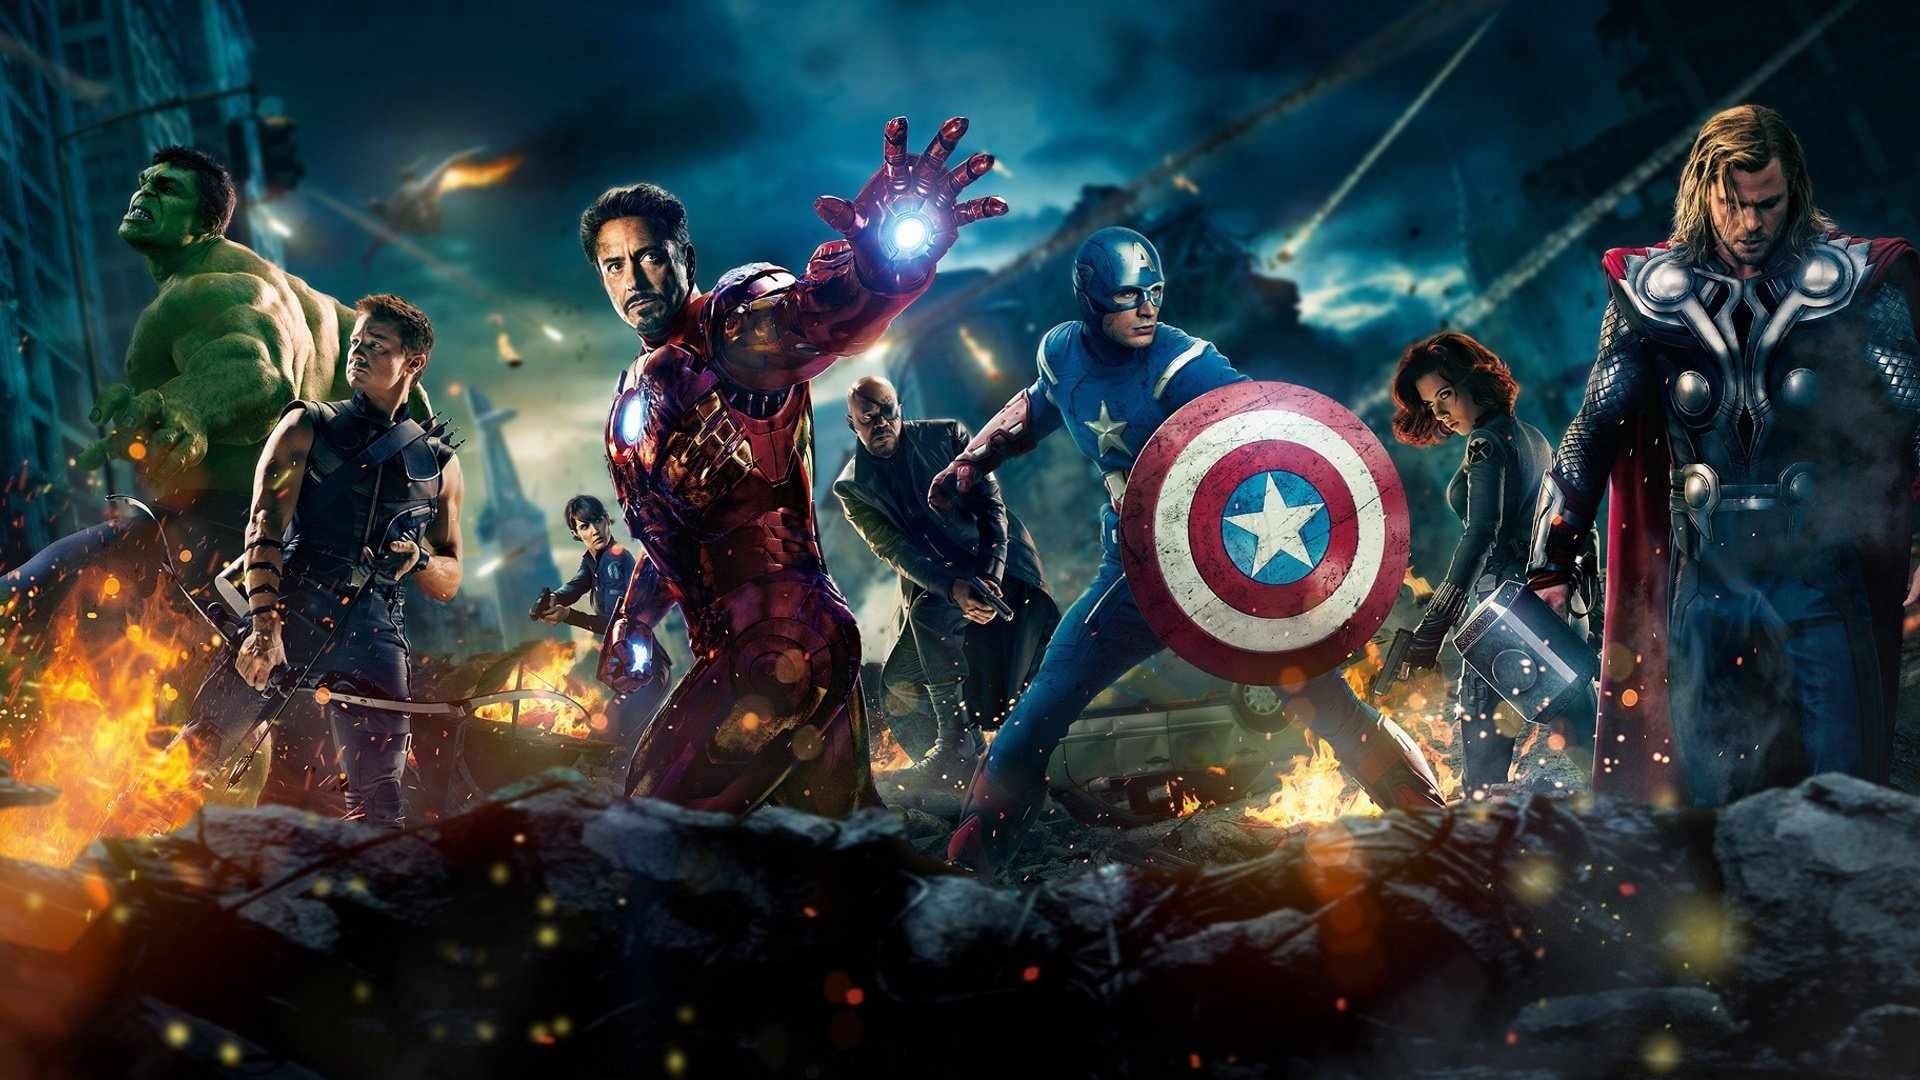 Marvel's The Avengers (2012)